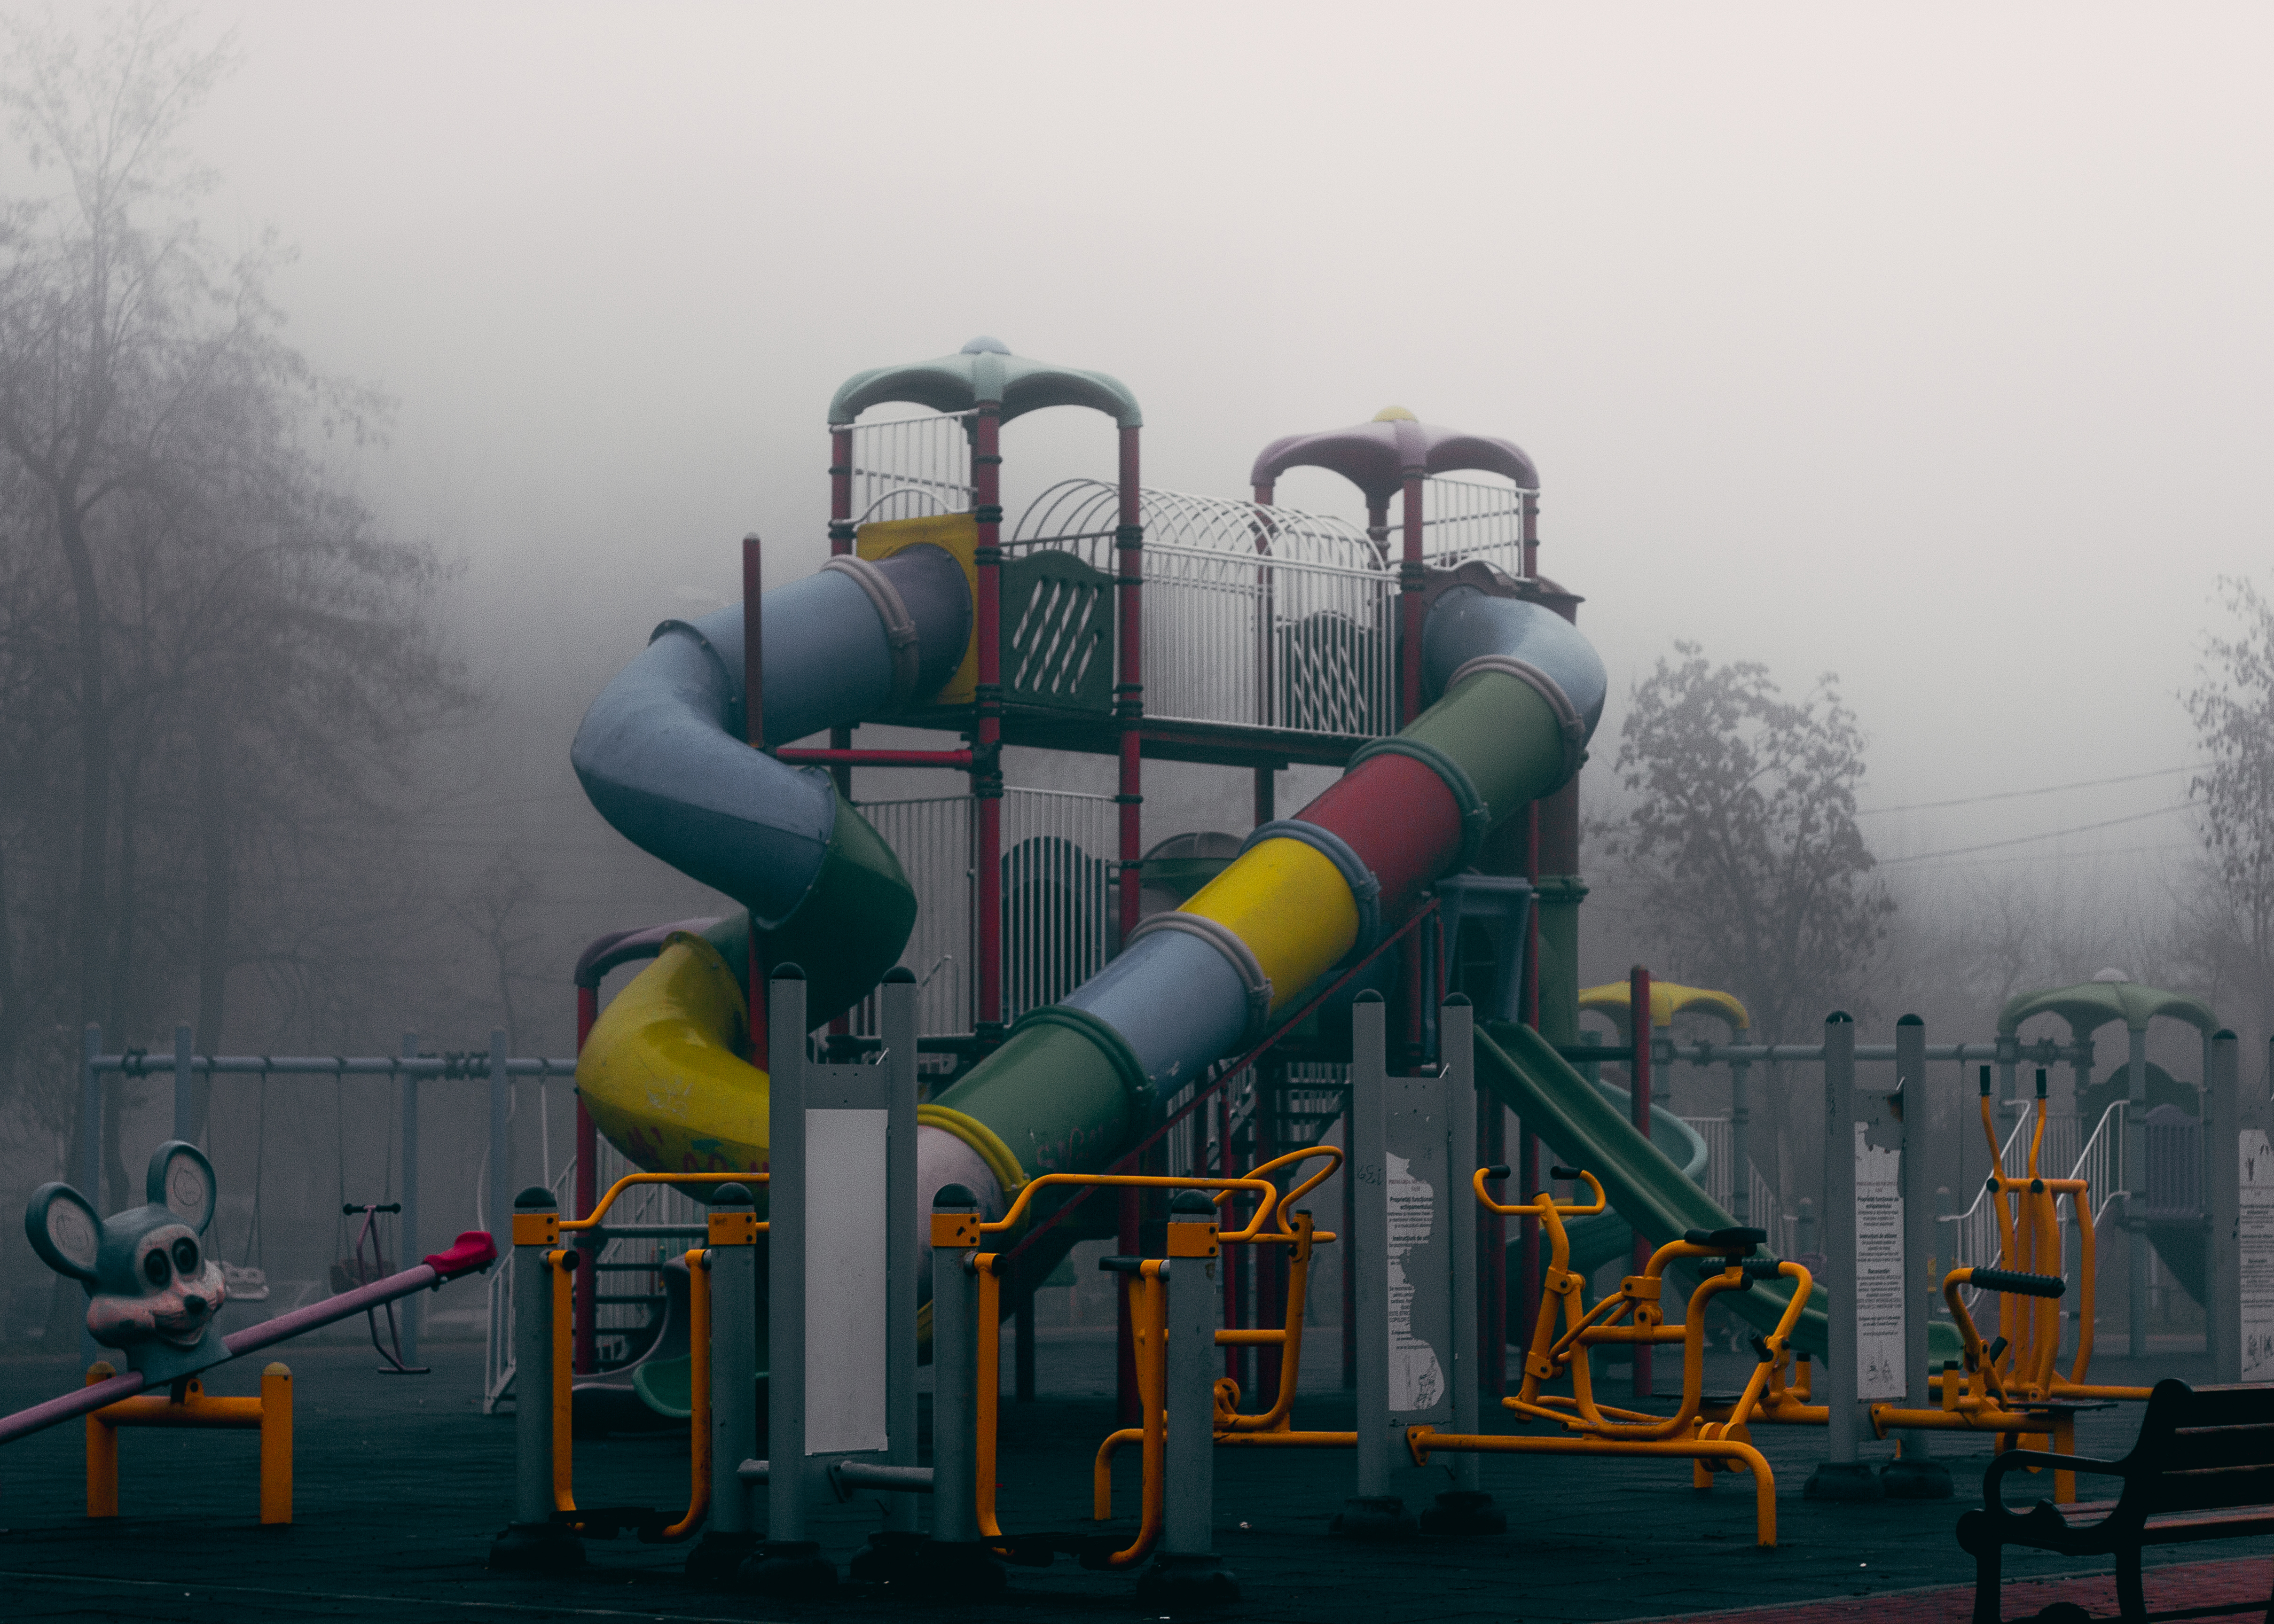 Parques infantiles cubiertos en Bizkaia - Cuentos de